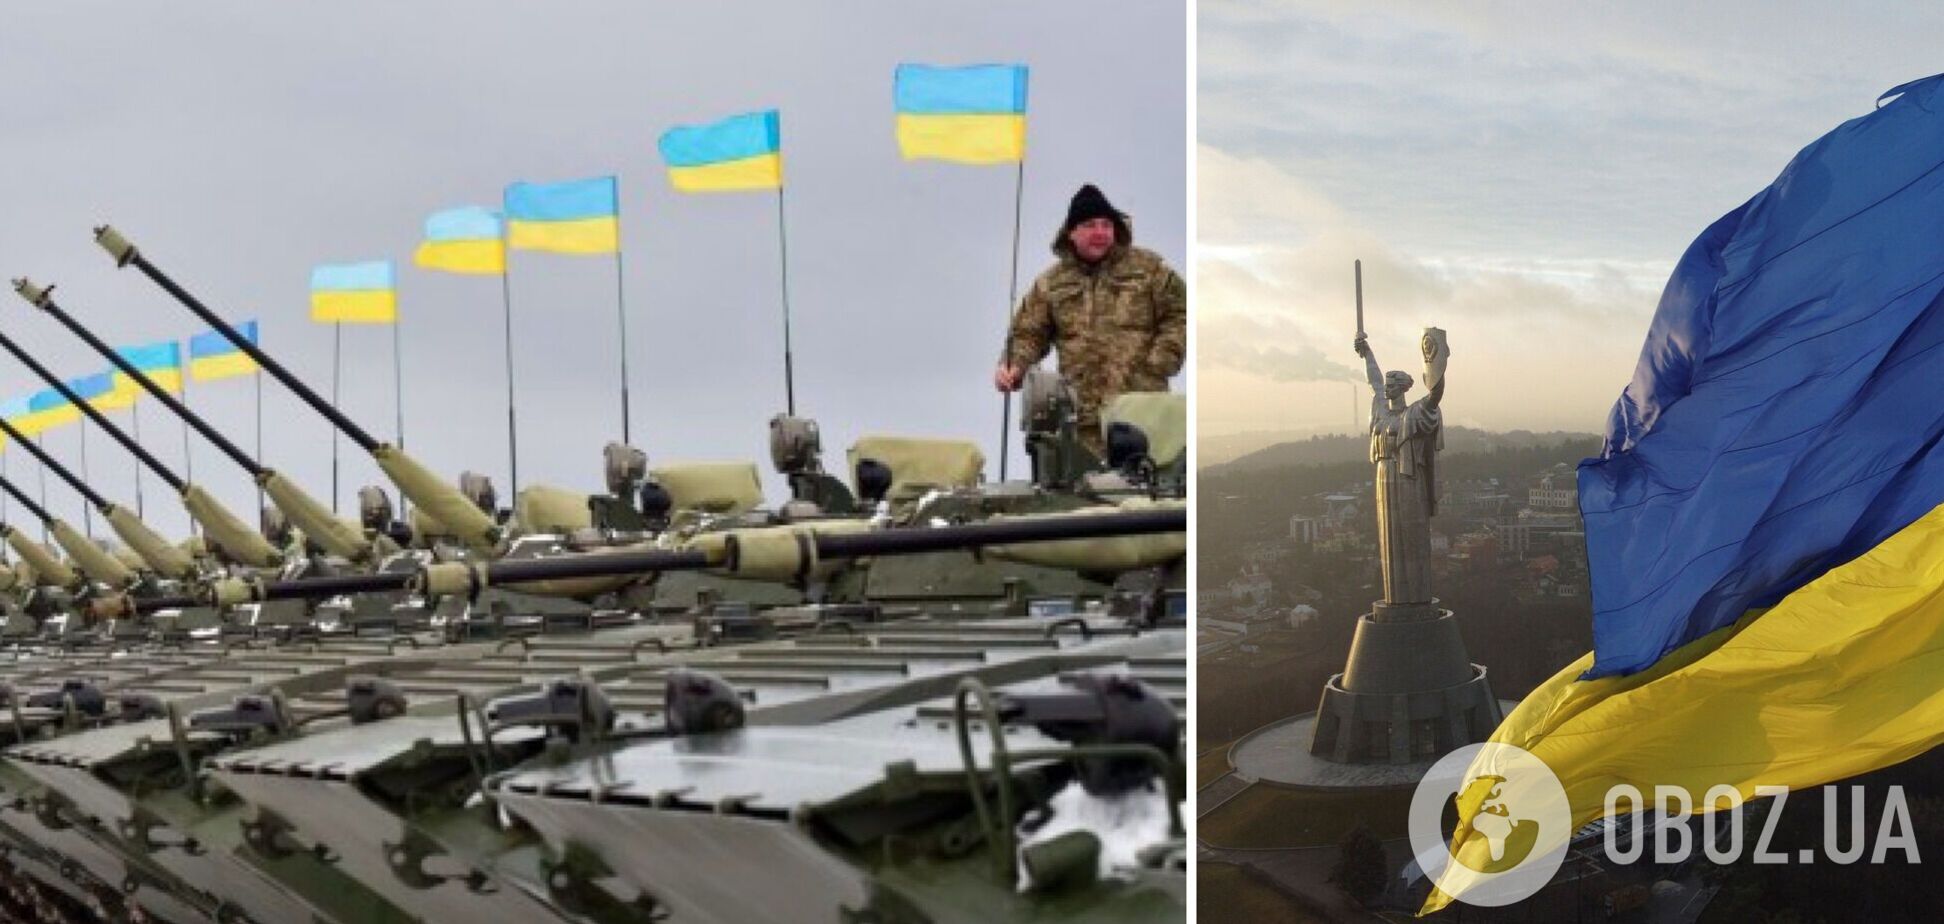 'Стратегически мы уже одержали победу': в МВД рассказали об успехе Украины